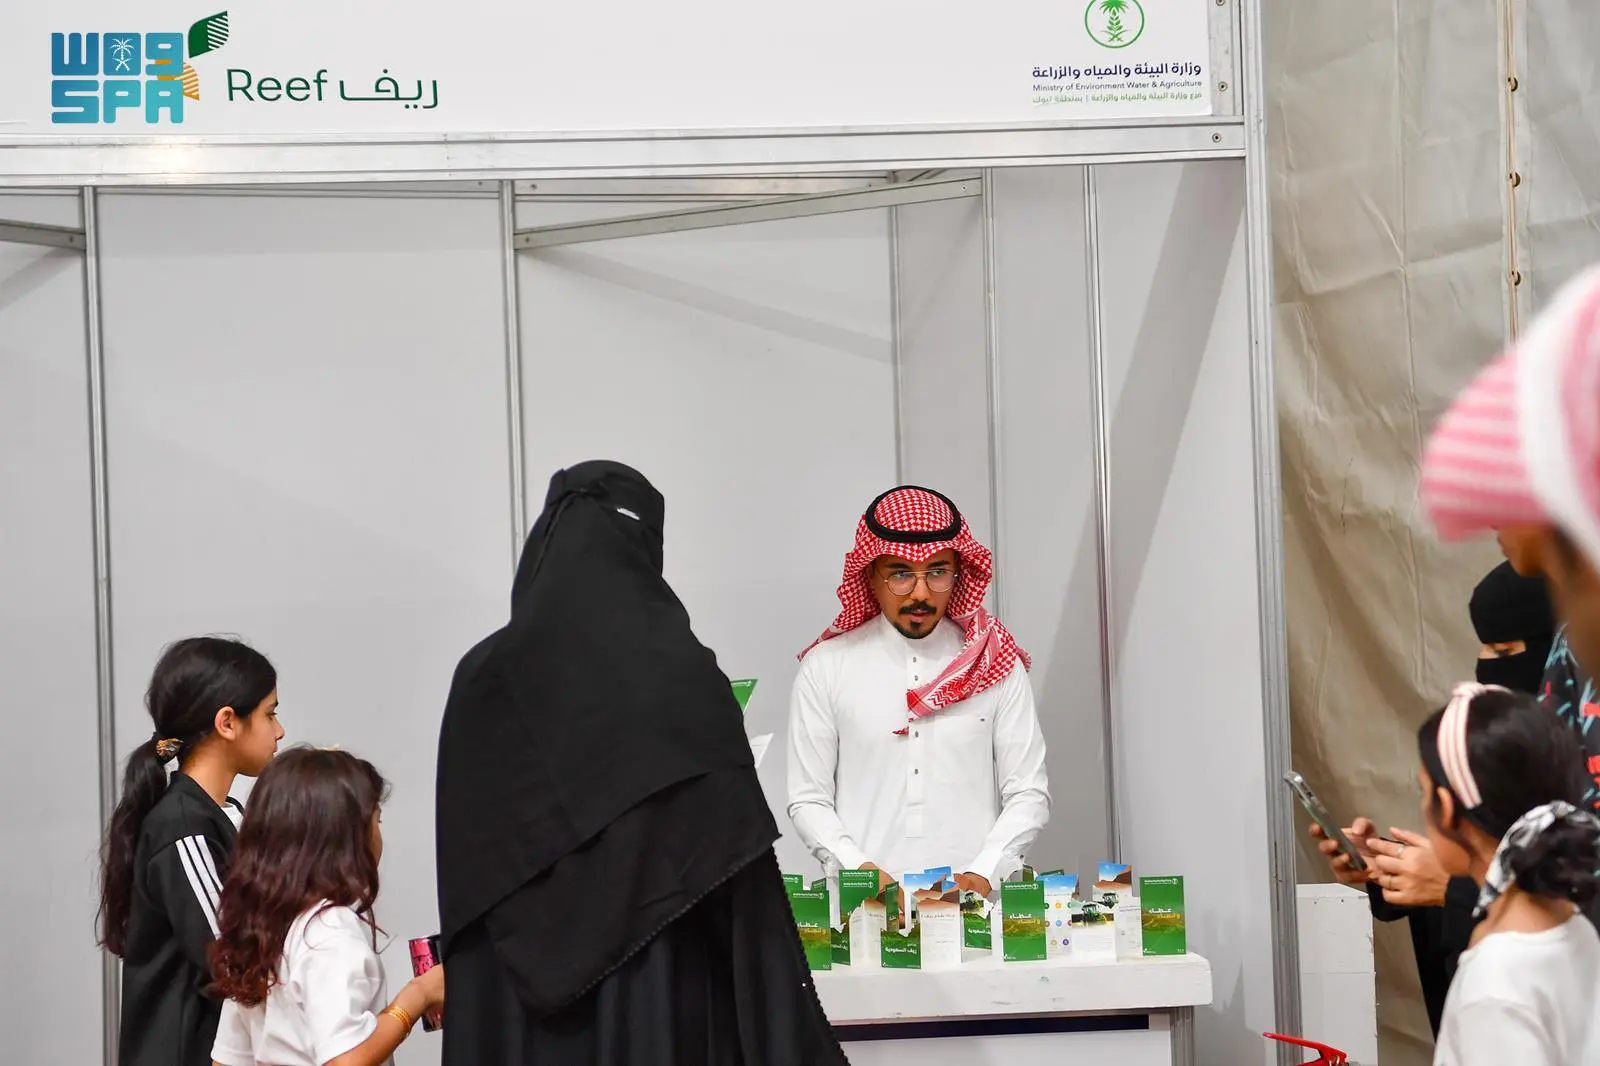 “ريف السعودية” يستعرض برامجه التنموية في مهرجان المنتجات الزراعية بتيماء